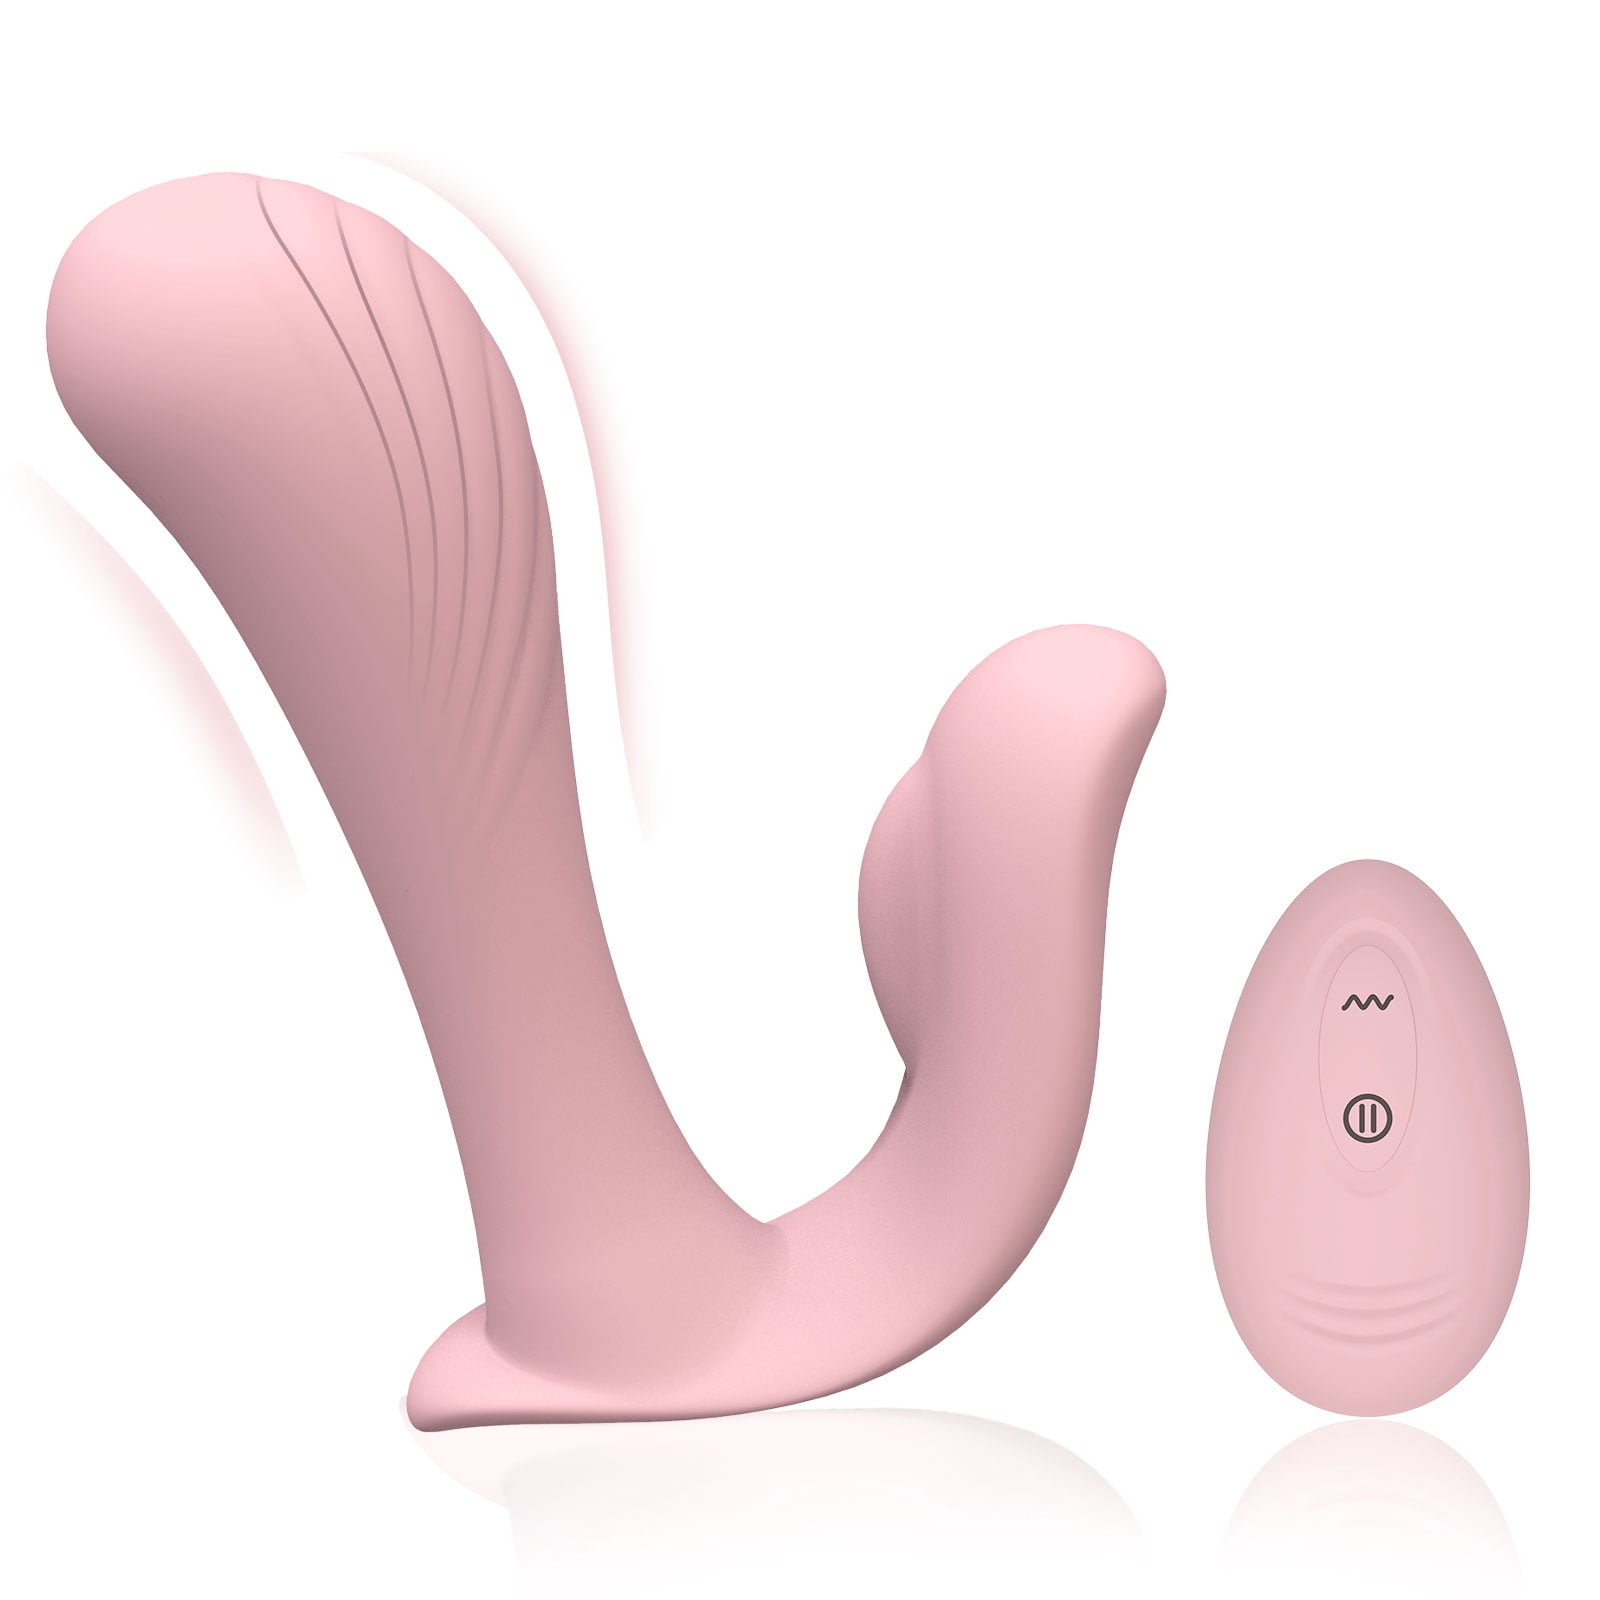 bad wives tgp cleaner clitoris vacuum Porn Pics Hd